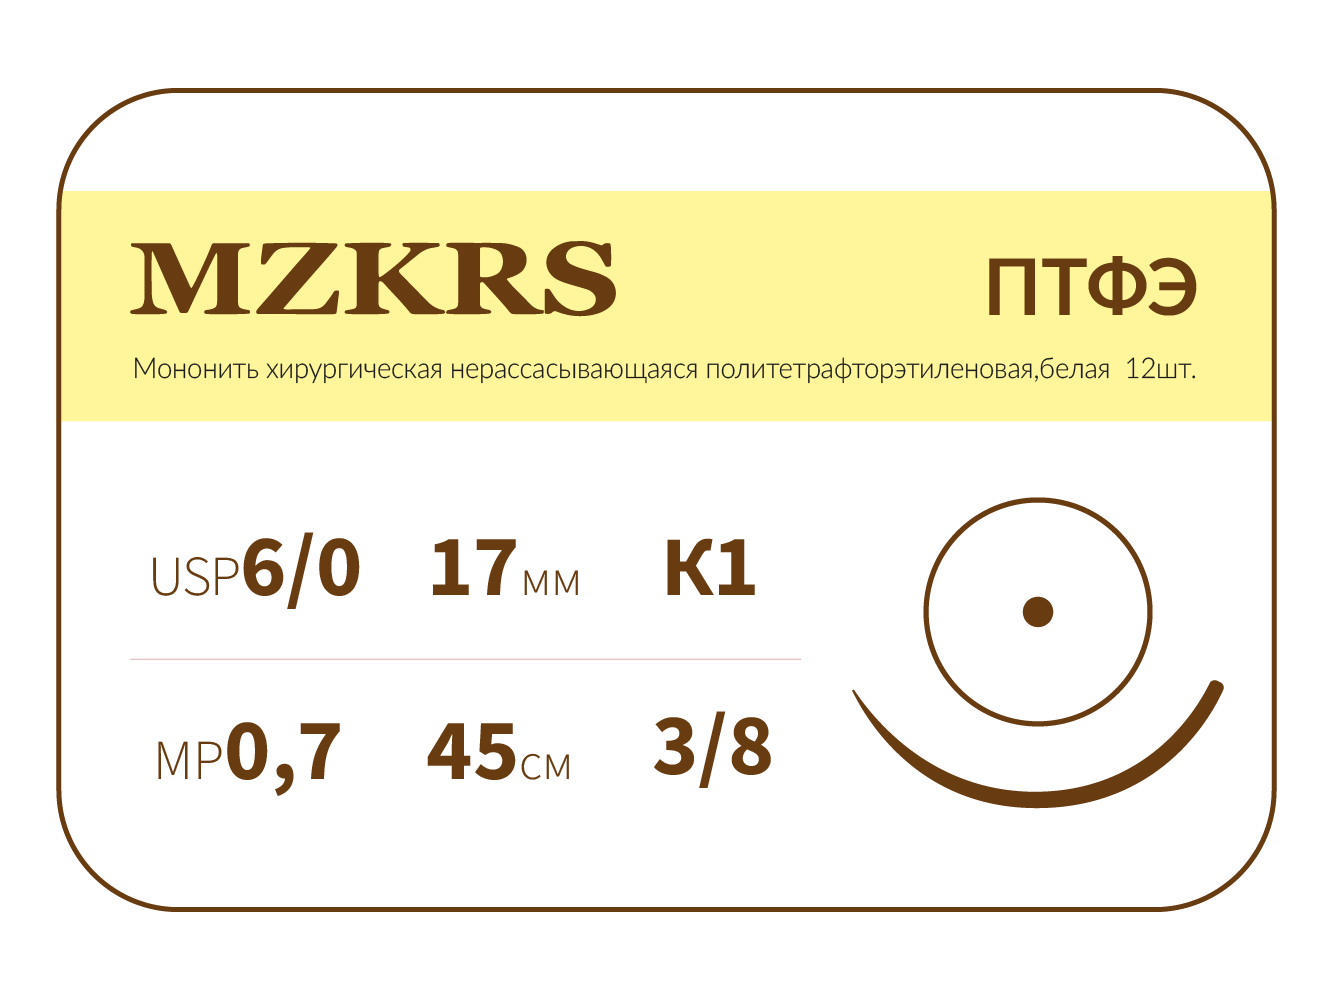 1738К-Premium 6/0 (0.7) 45 ПТФЭ хирургическая нить политетрафторэтиленовая, MZKRS (Россия)